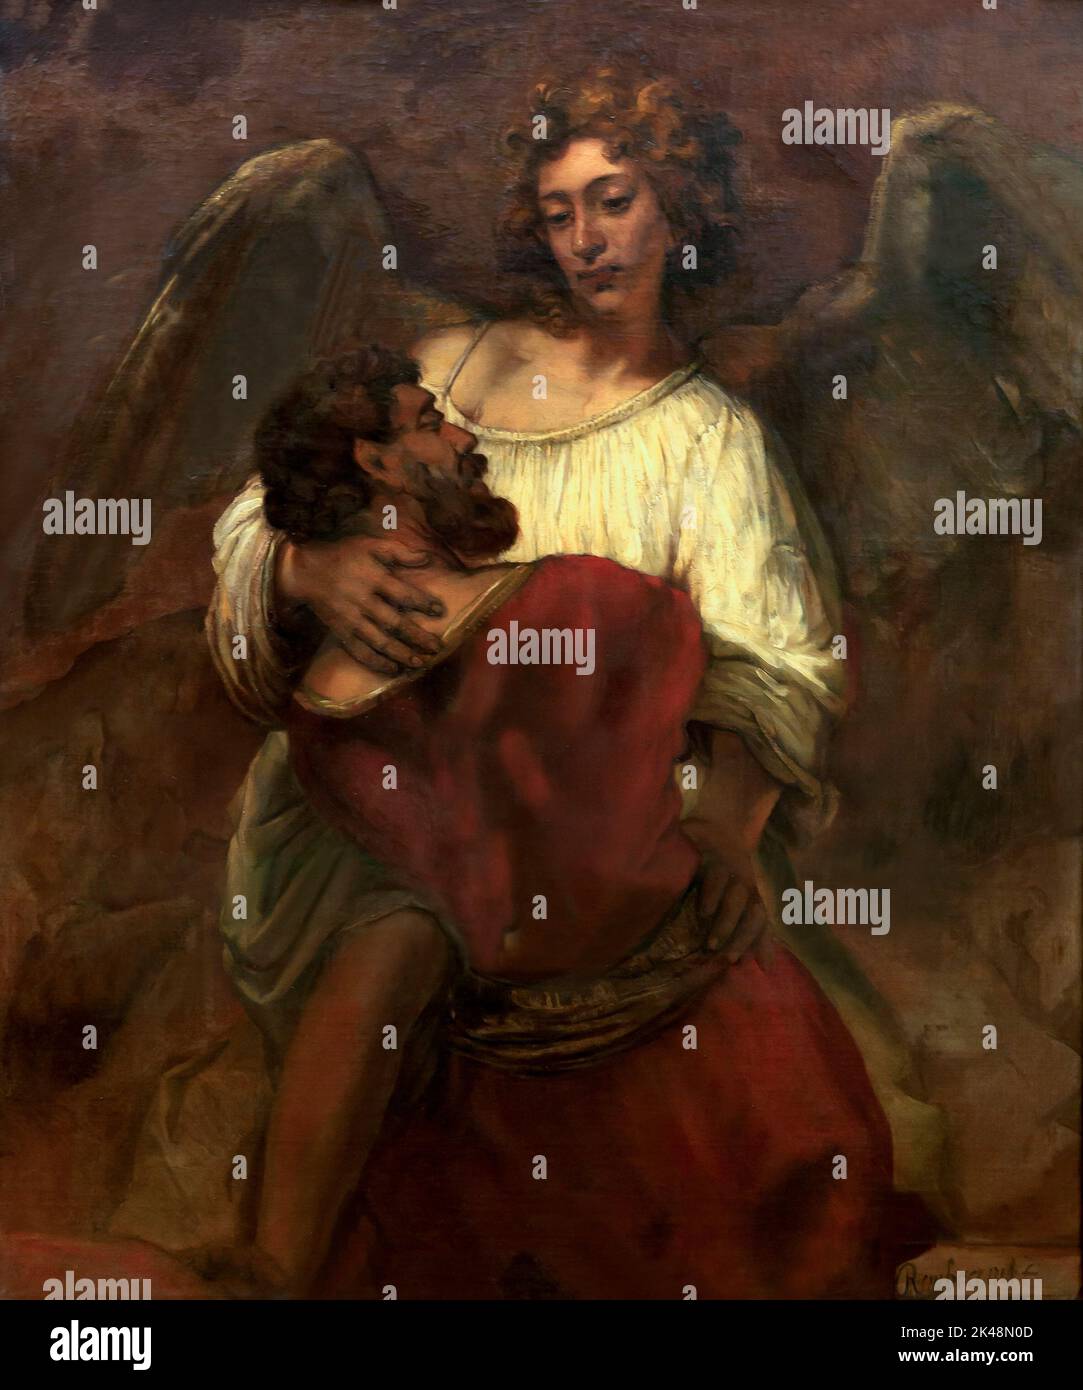 Jacob Wrestling avec l'Ange, Rembrandt, vers 1659, Gemaldegalerie, Berlin, Allemagne, Europe Banque D'Images